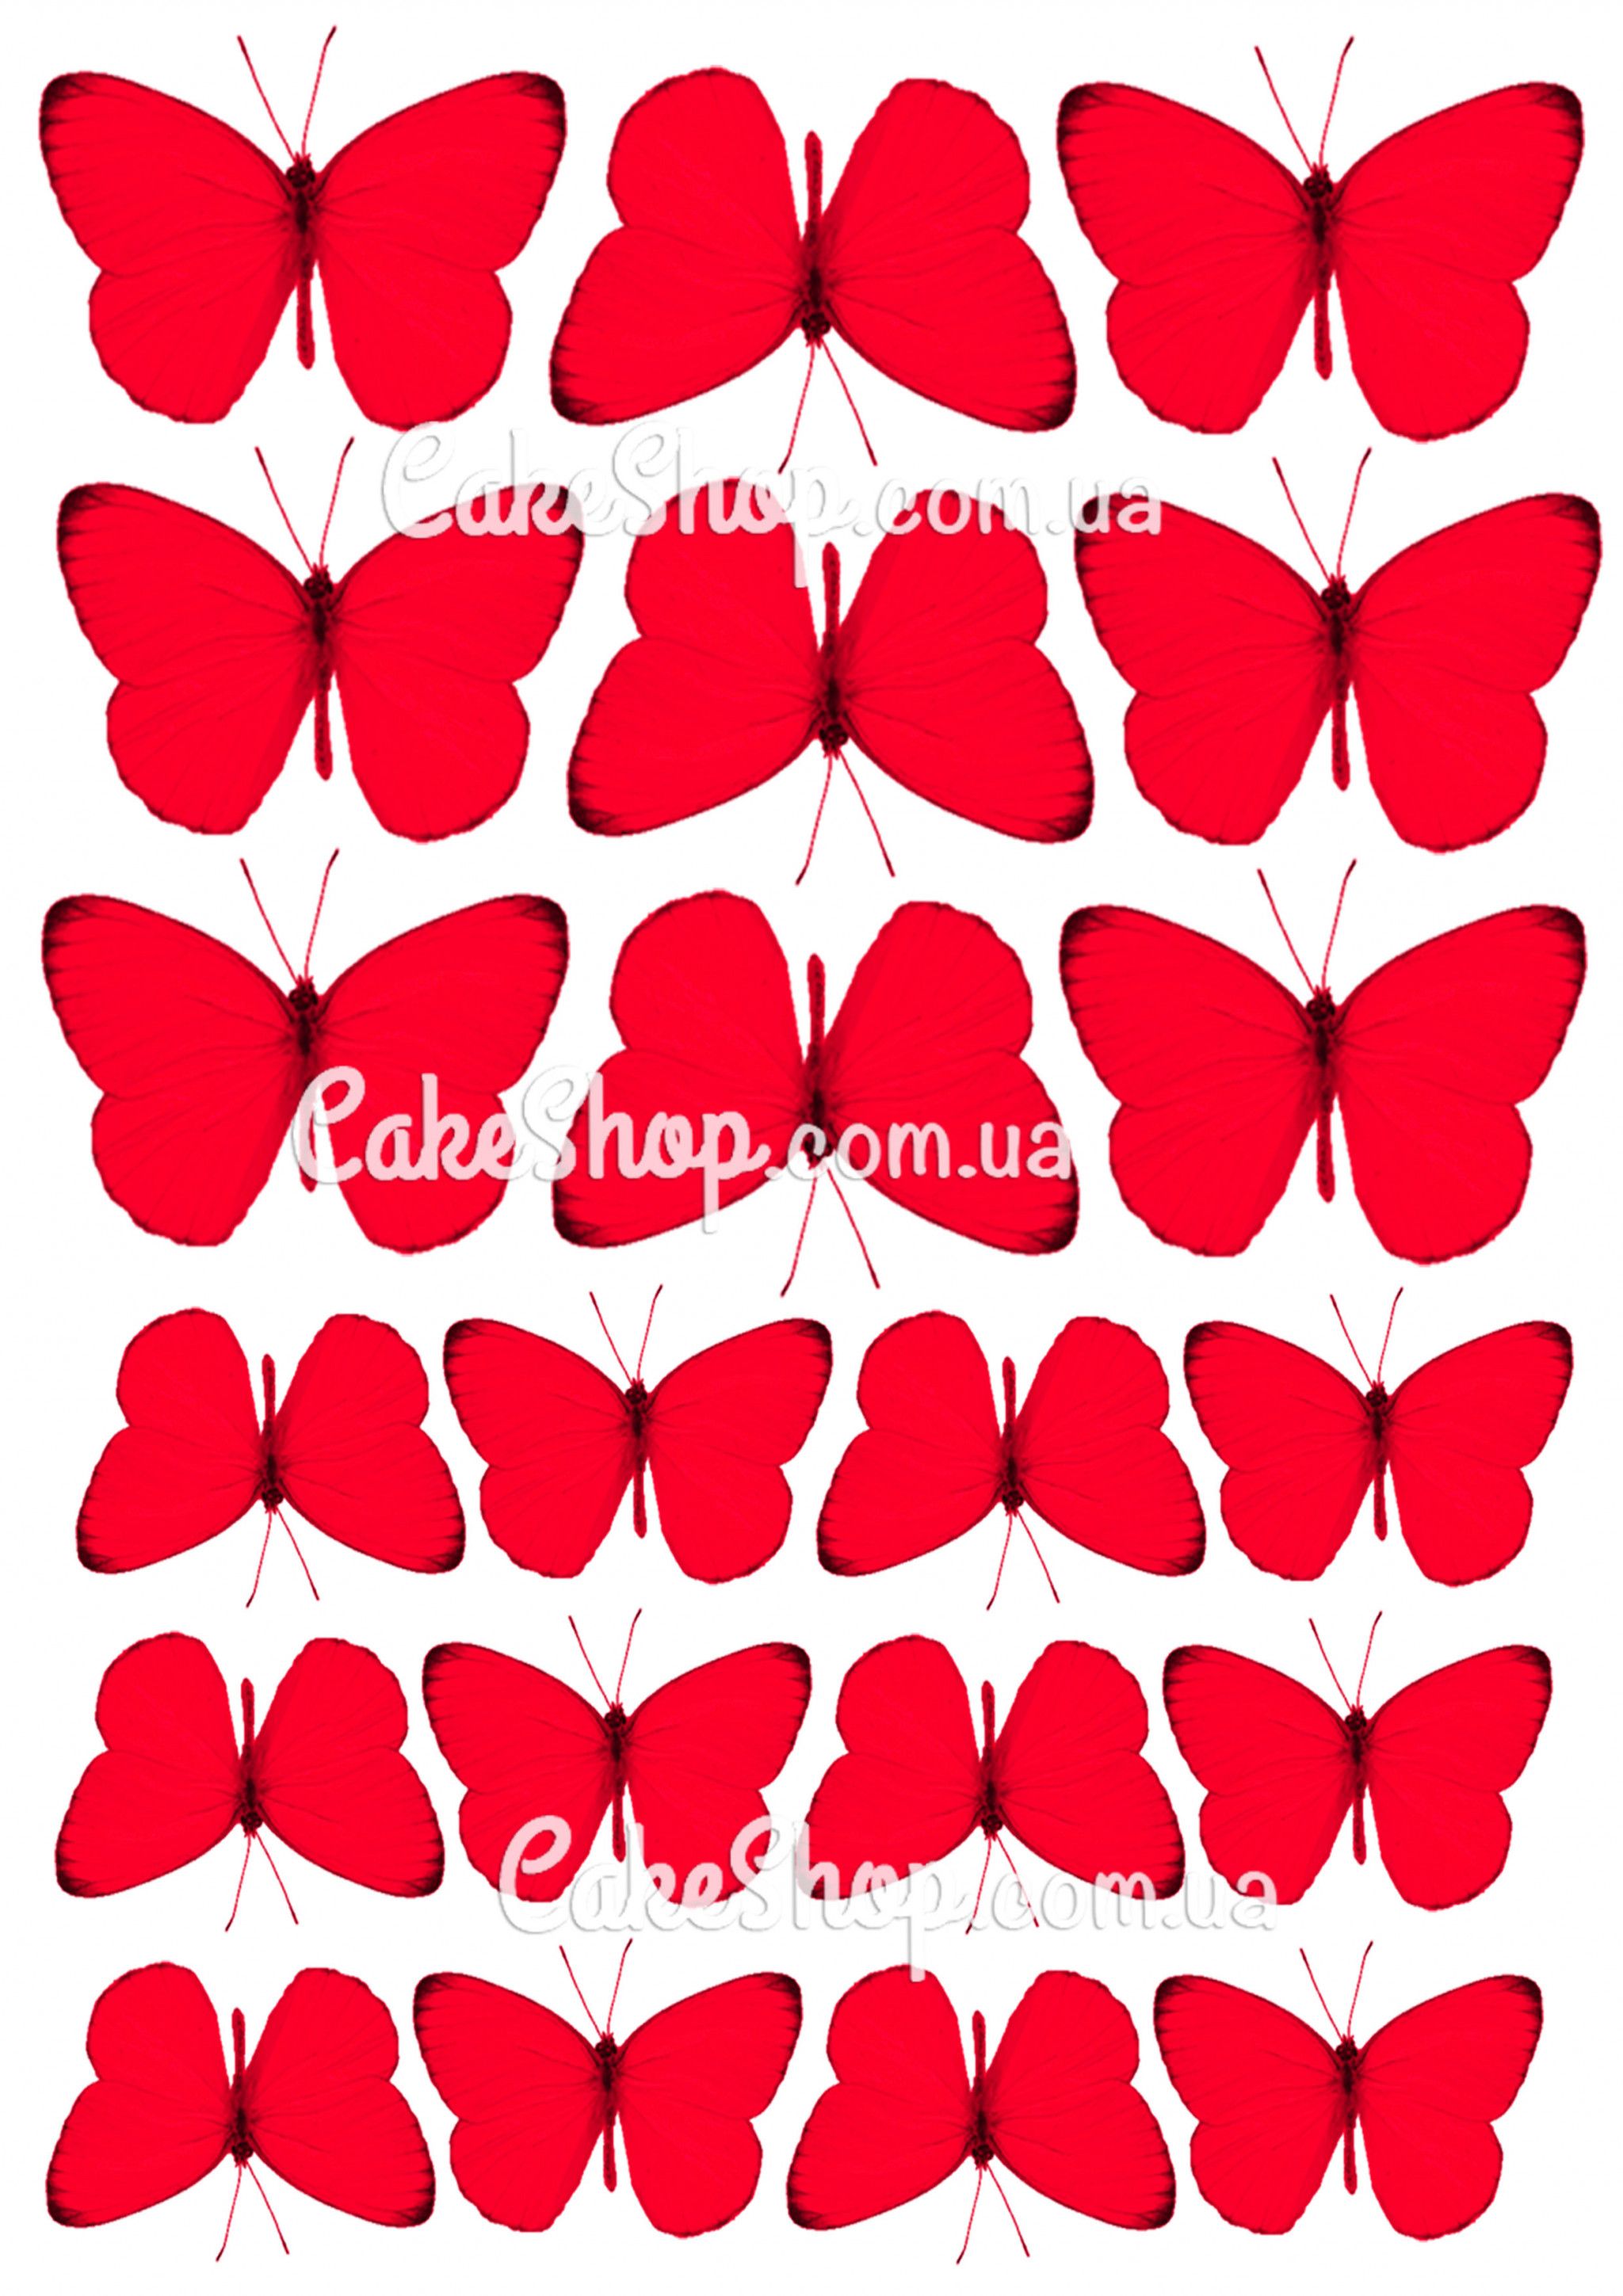 ⋗ Вафельная картинка Бабочки 10 купить в Украине ➛ CakeShop.com.ua, фото